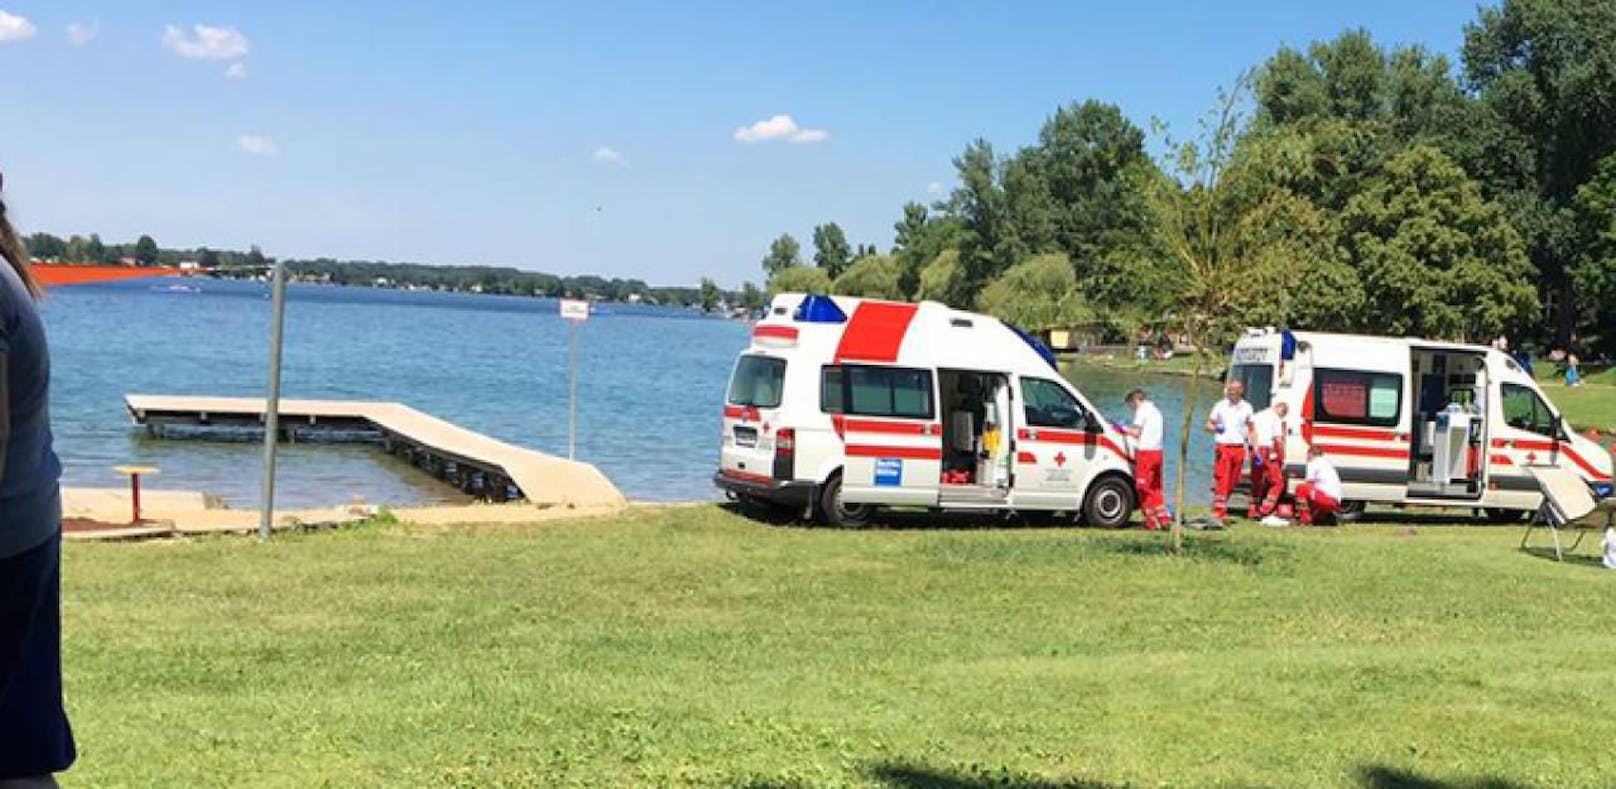 Rettung in letzter Sekunde: Männer (20) aus Wiener Neustadt im Neufelder See untergegangen.